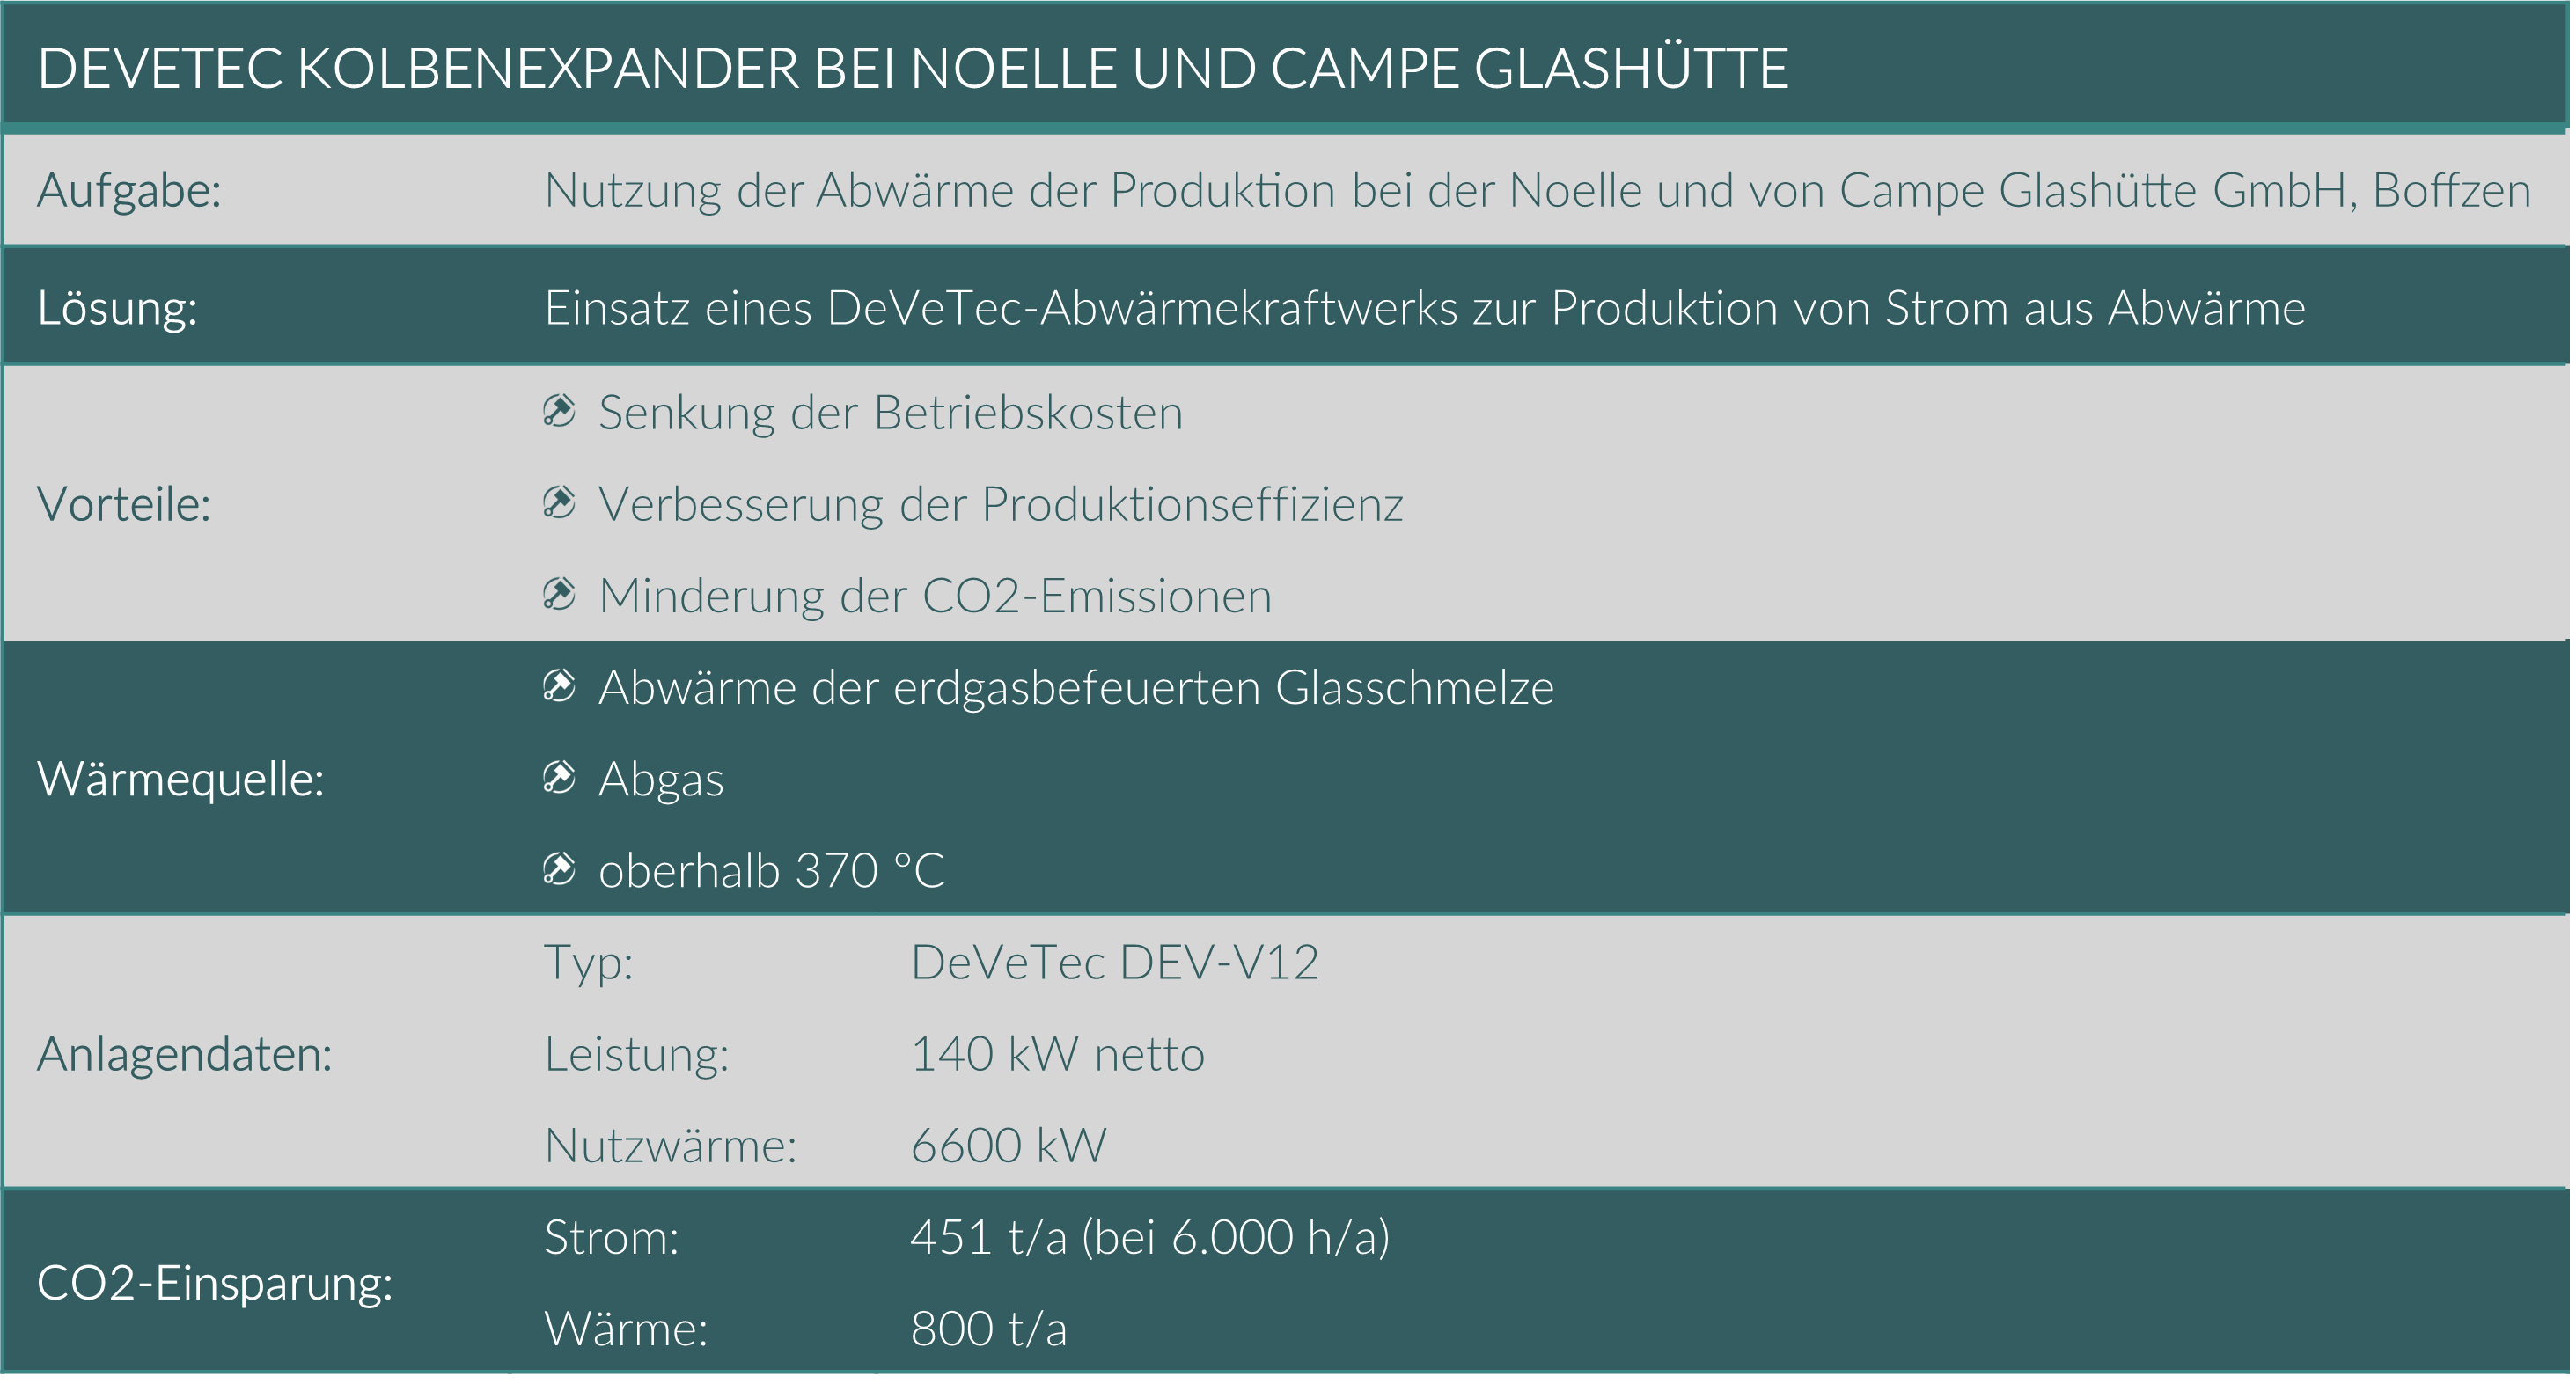 Überblick über das DeVeTec Abwärmekraftwerk zur Stromproduktion bei Noelle und von Campe Glashütte